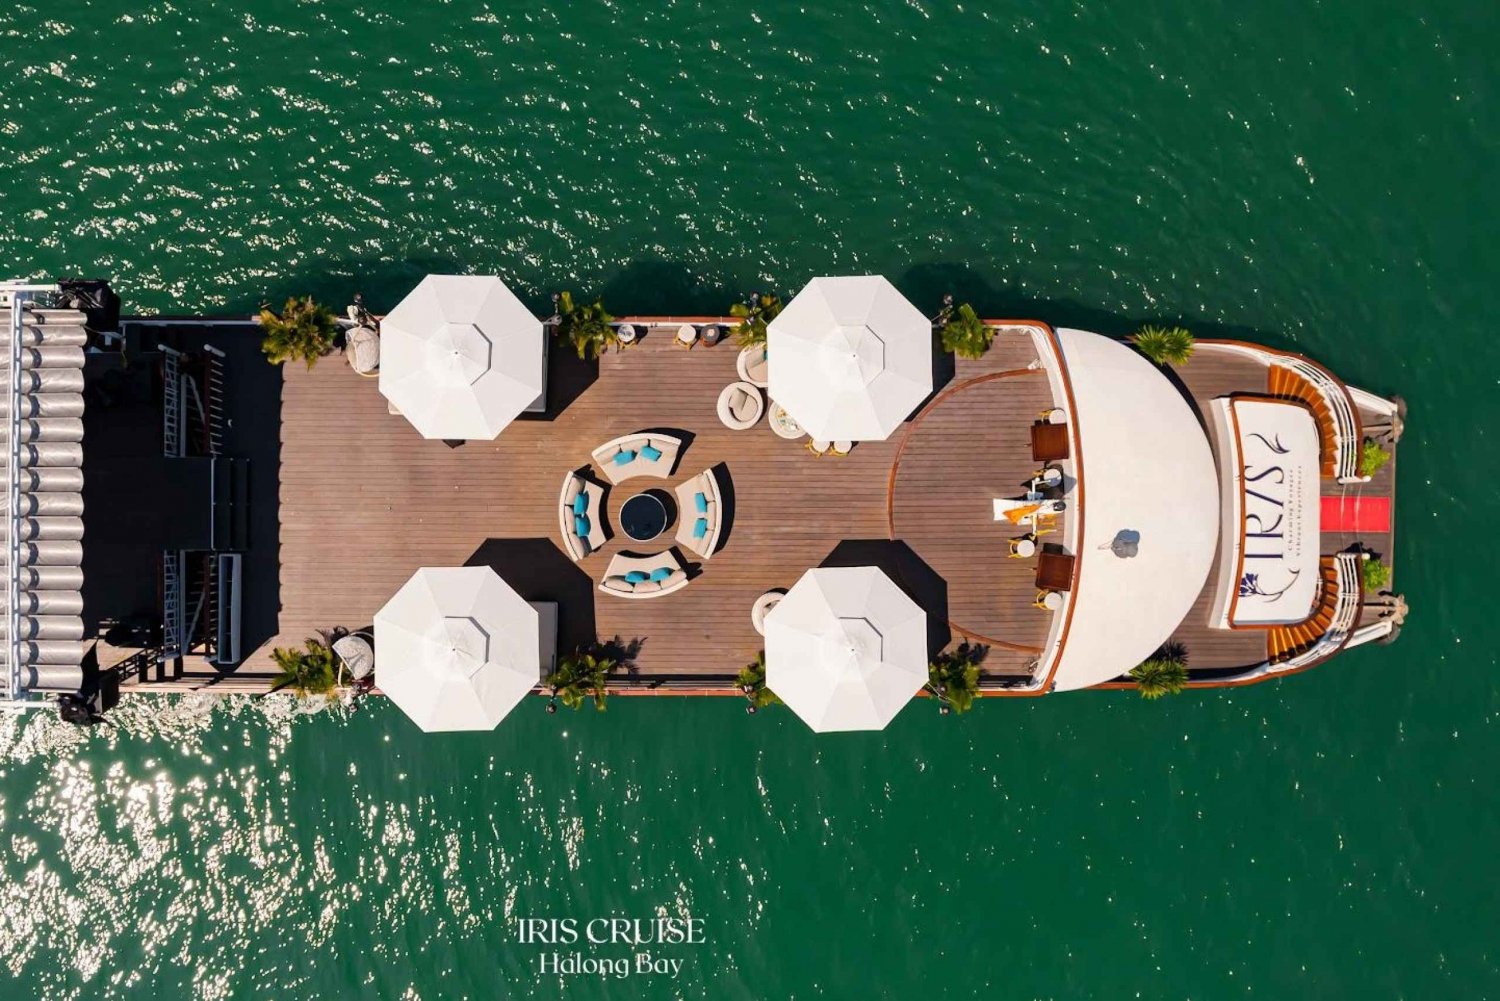 Ha Long Bay: Luxe cruise van een hele dag, jacuzzi, grotten & eiland